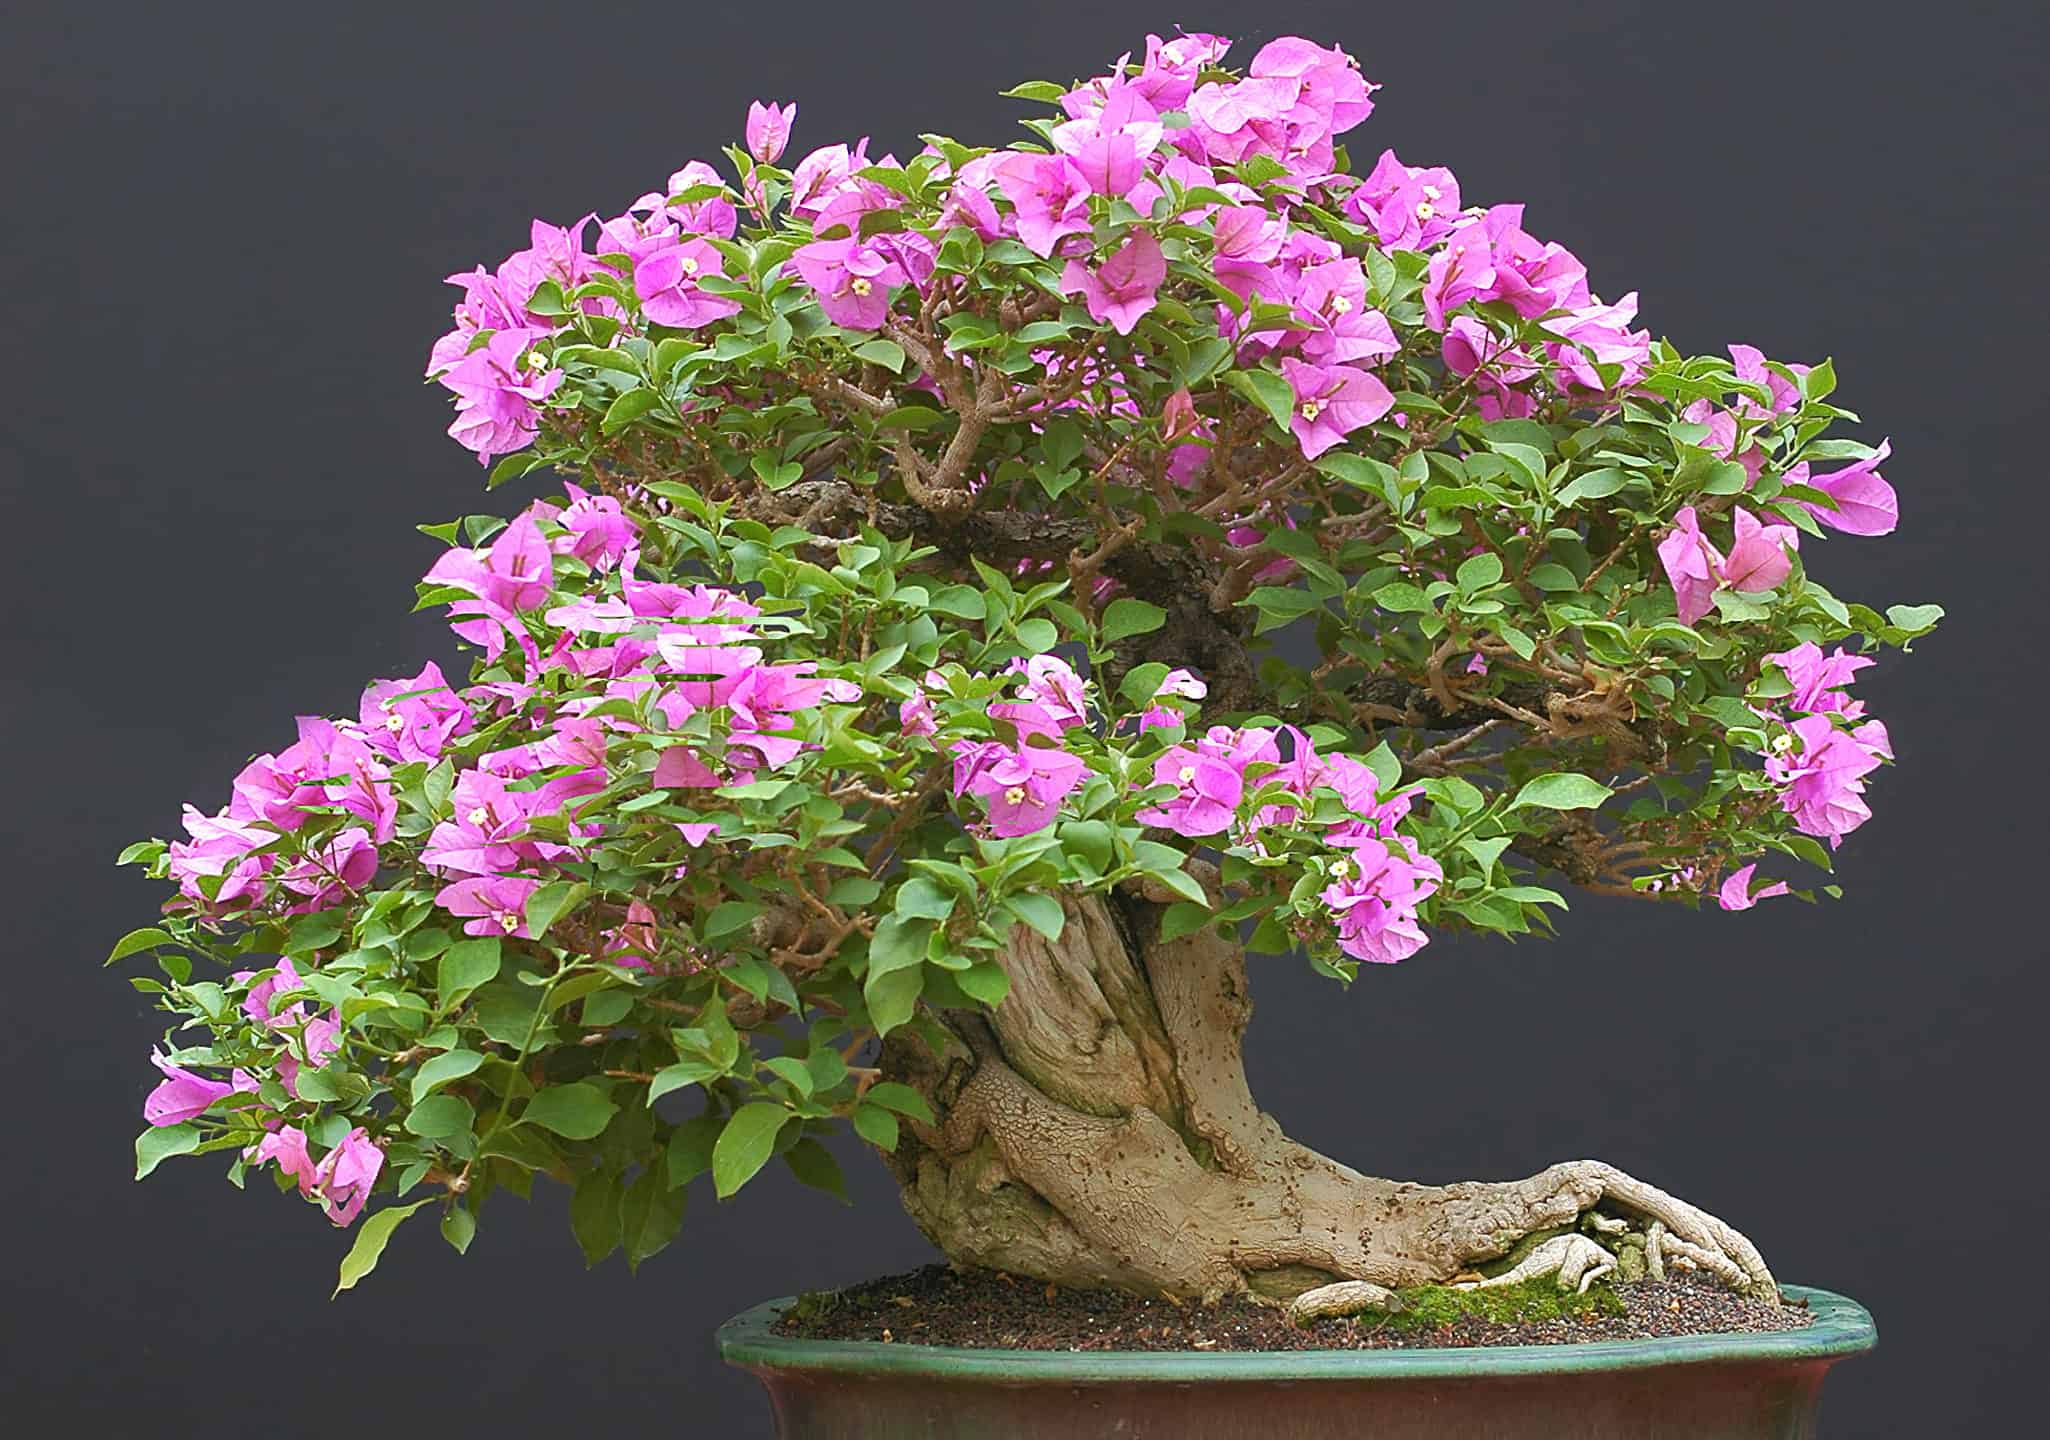 Bougainvillea bonsai in full bloom